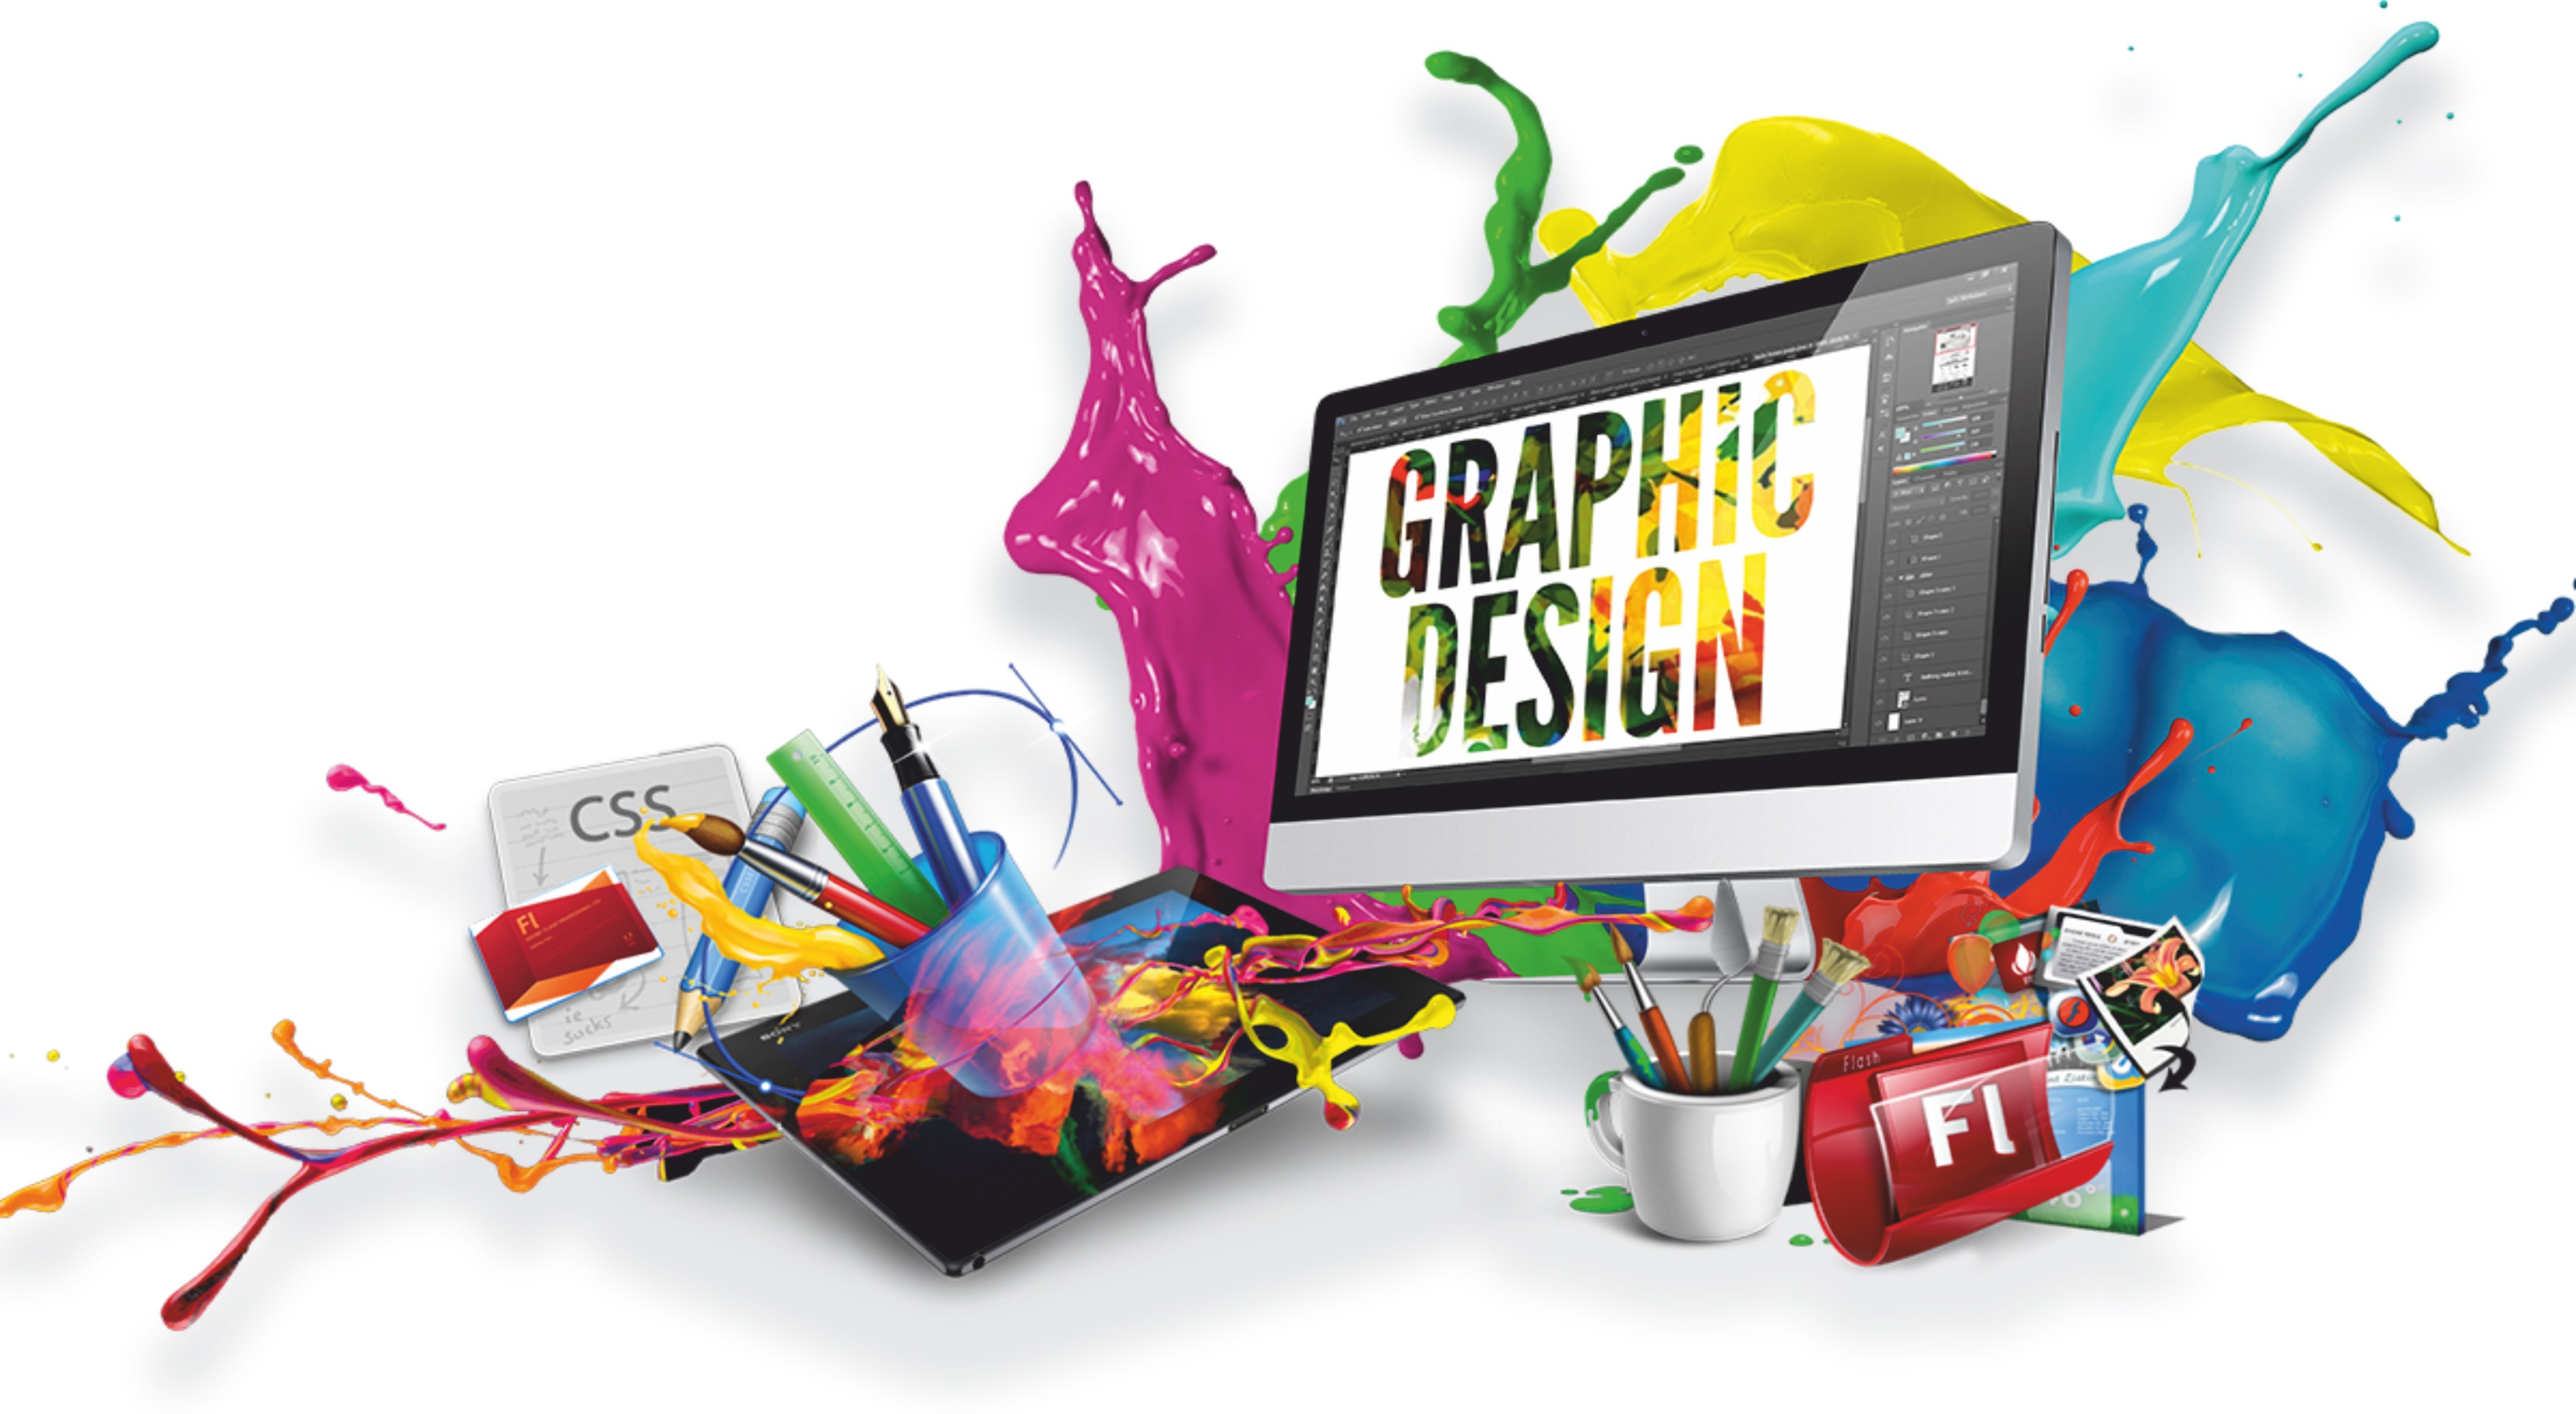 Дизайн компьютерных сайтов. Графический дизайн. Компьютерная Графика и дизайн. Веб дизайн. Графический дизайн и мультимедиа.